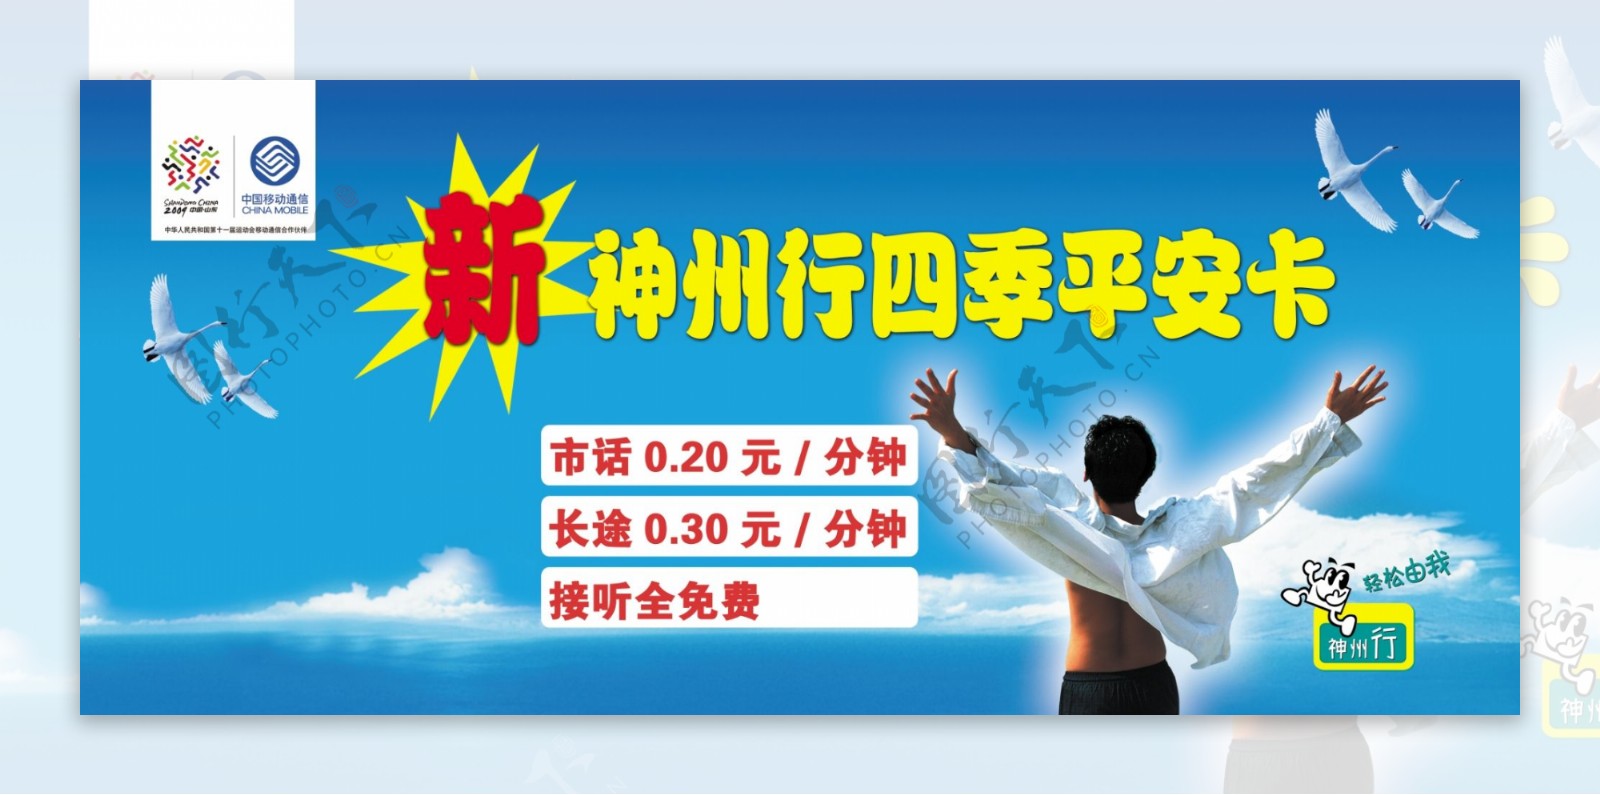 中国移动神州行四季平安卡海报户外宣传广告